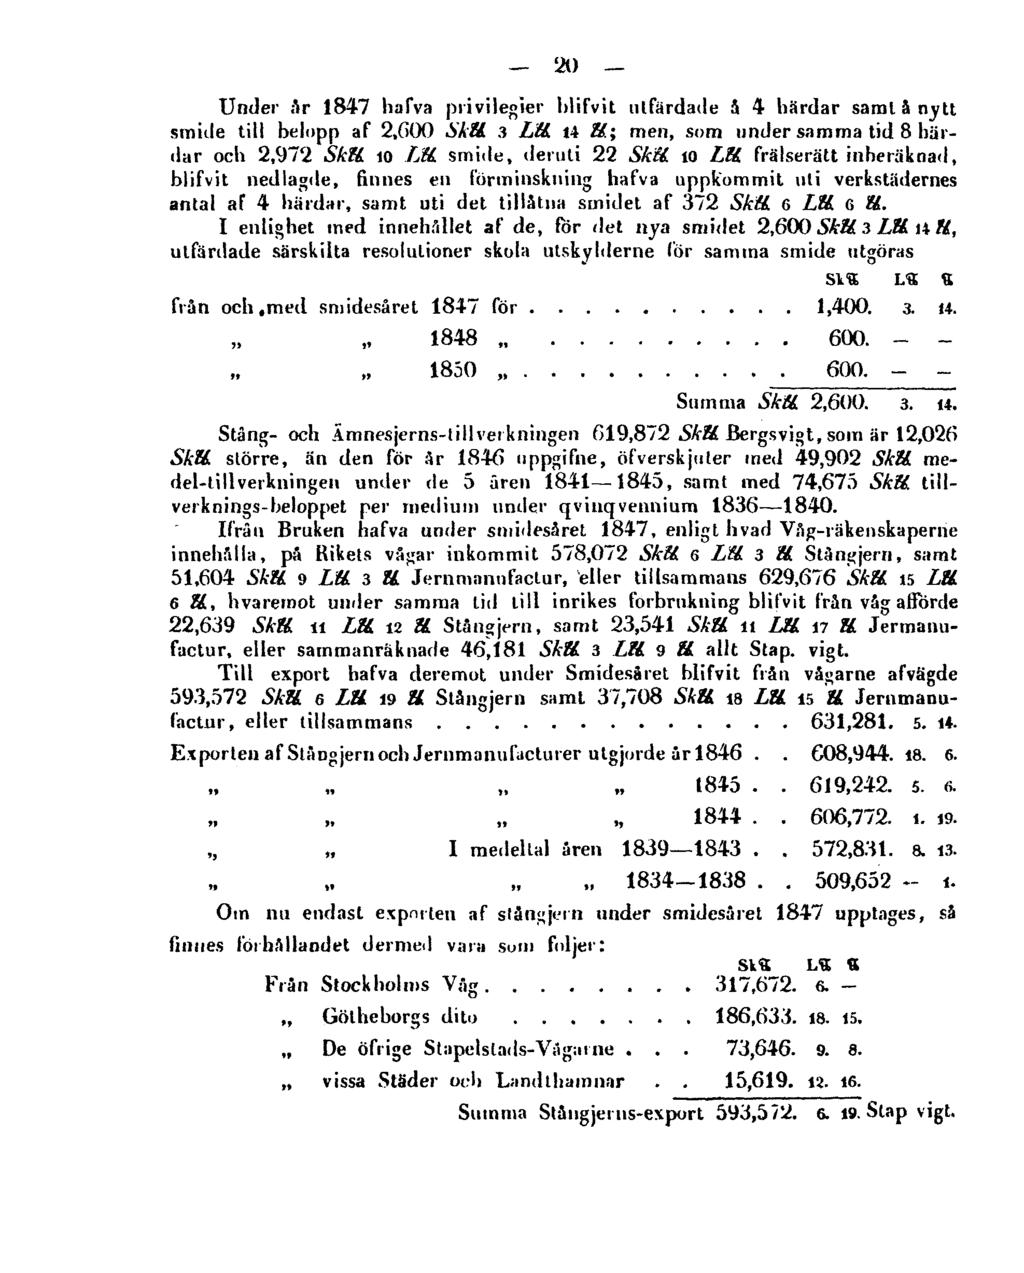 20 Under år 1847 hafva privilegier blifvit utfärdade å 4 härdar samla nytt smide till belopp af 2,600 Skll. 3 Lll. 14 ll.; men, som under samma tid 8 härdar och 2,972 Skll.